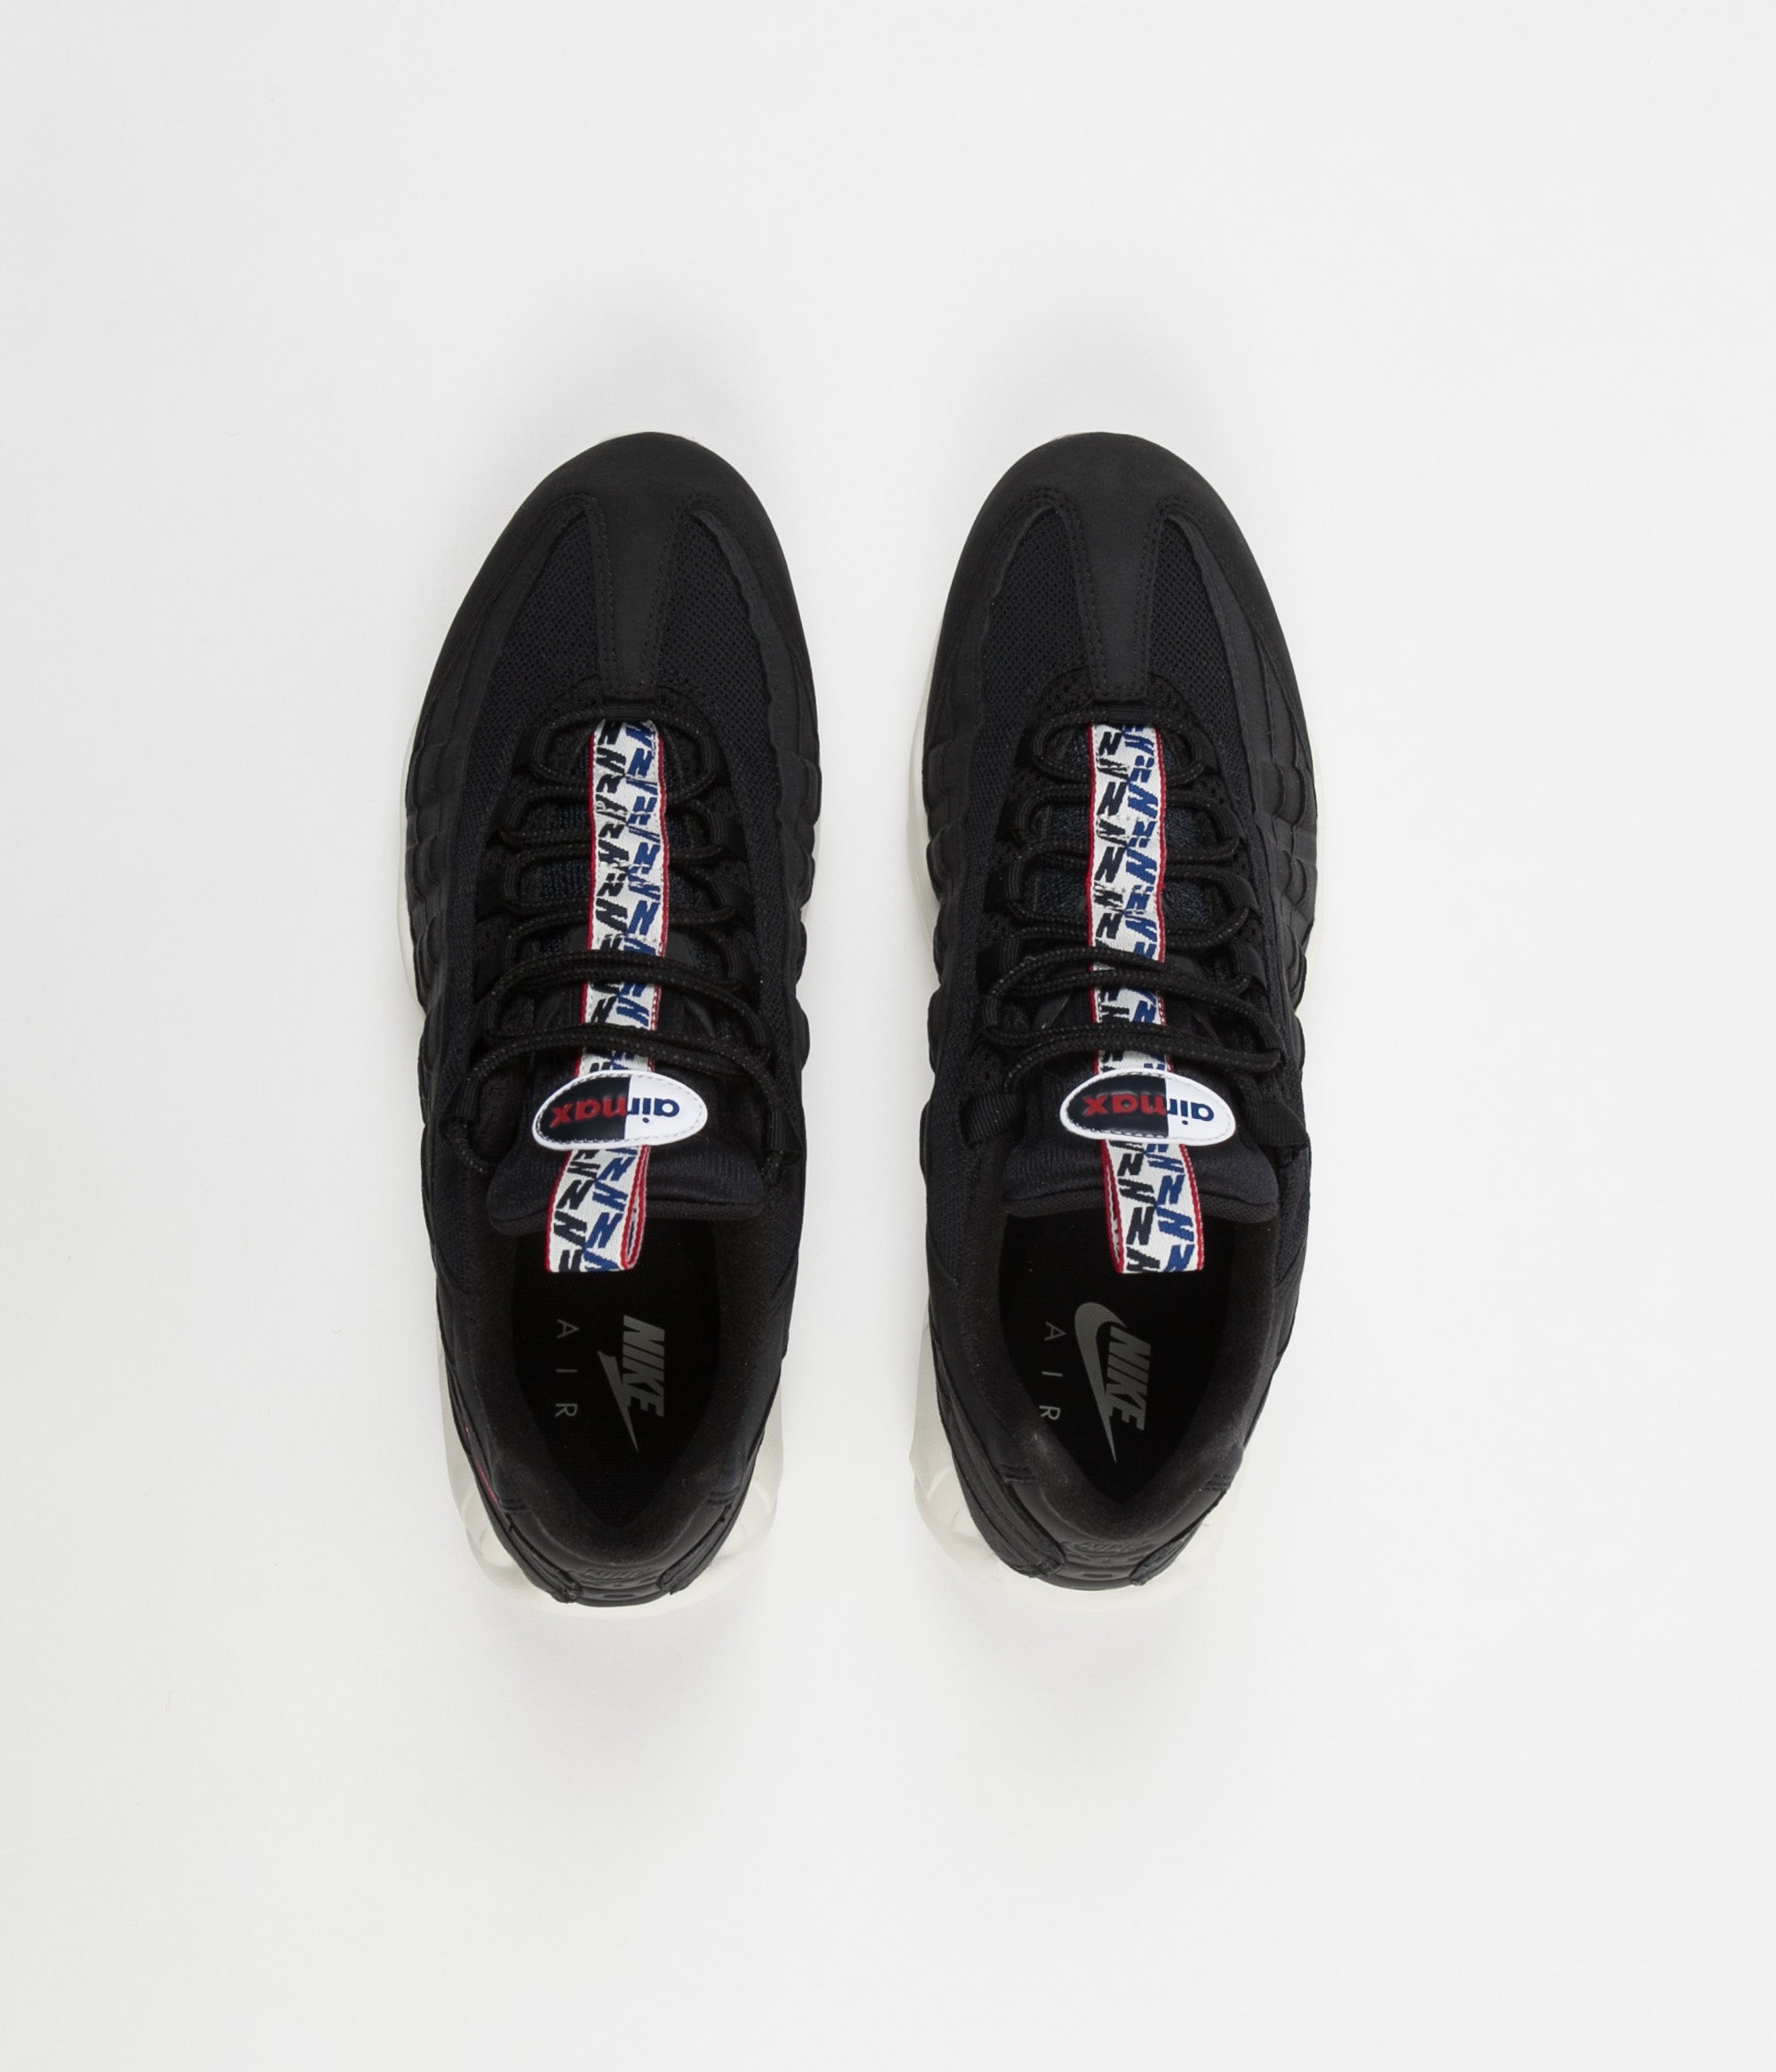 Nike Air Max 95 TT Shoes - Black / Sail 